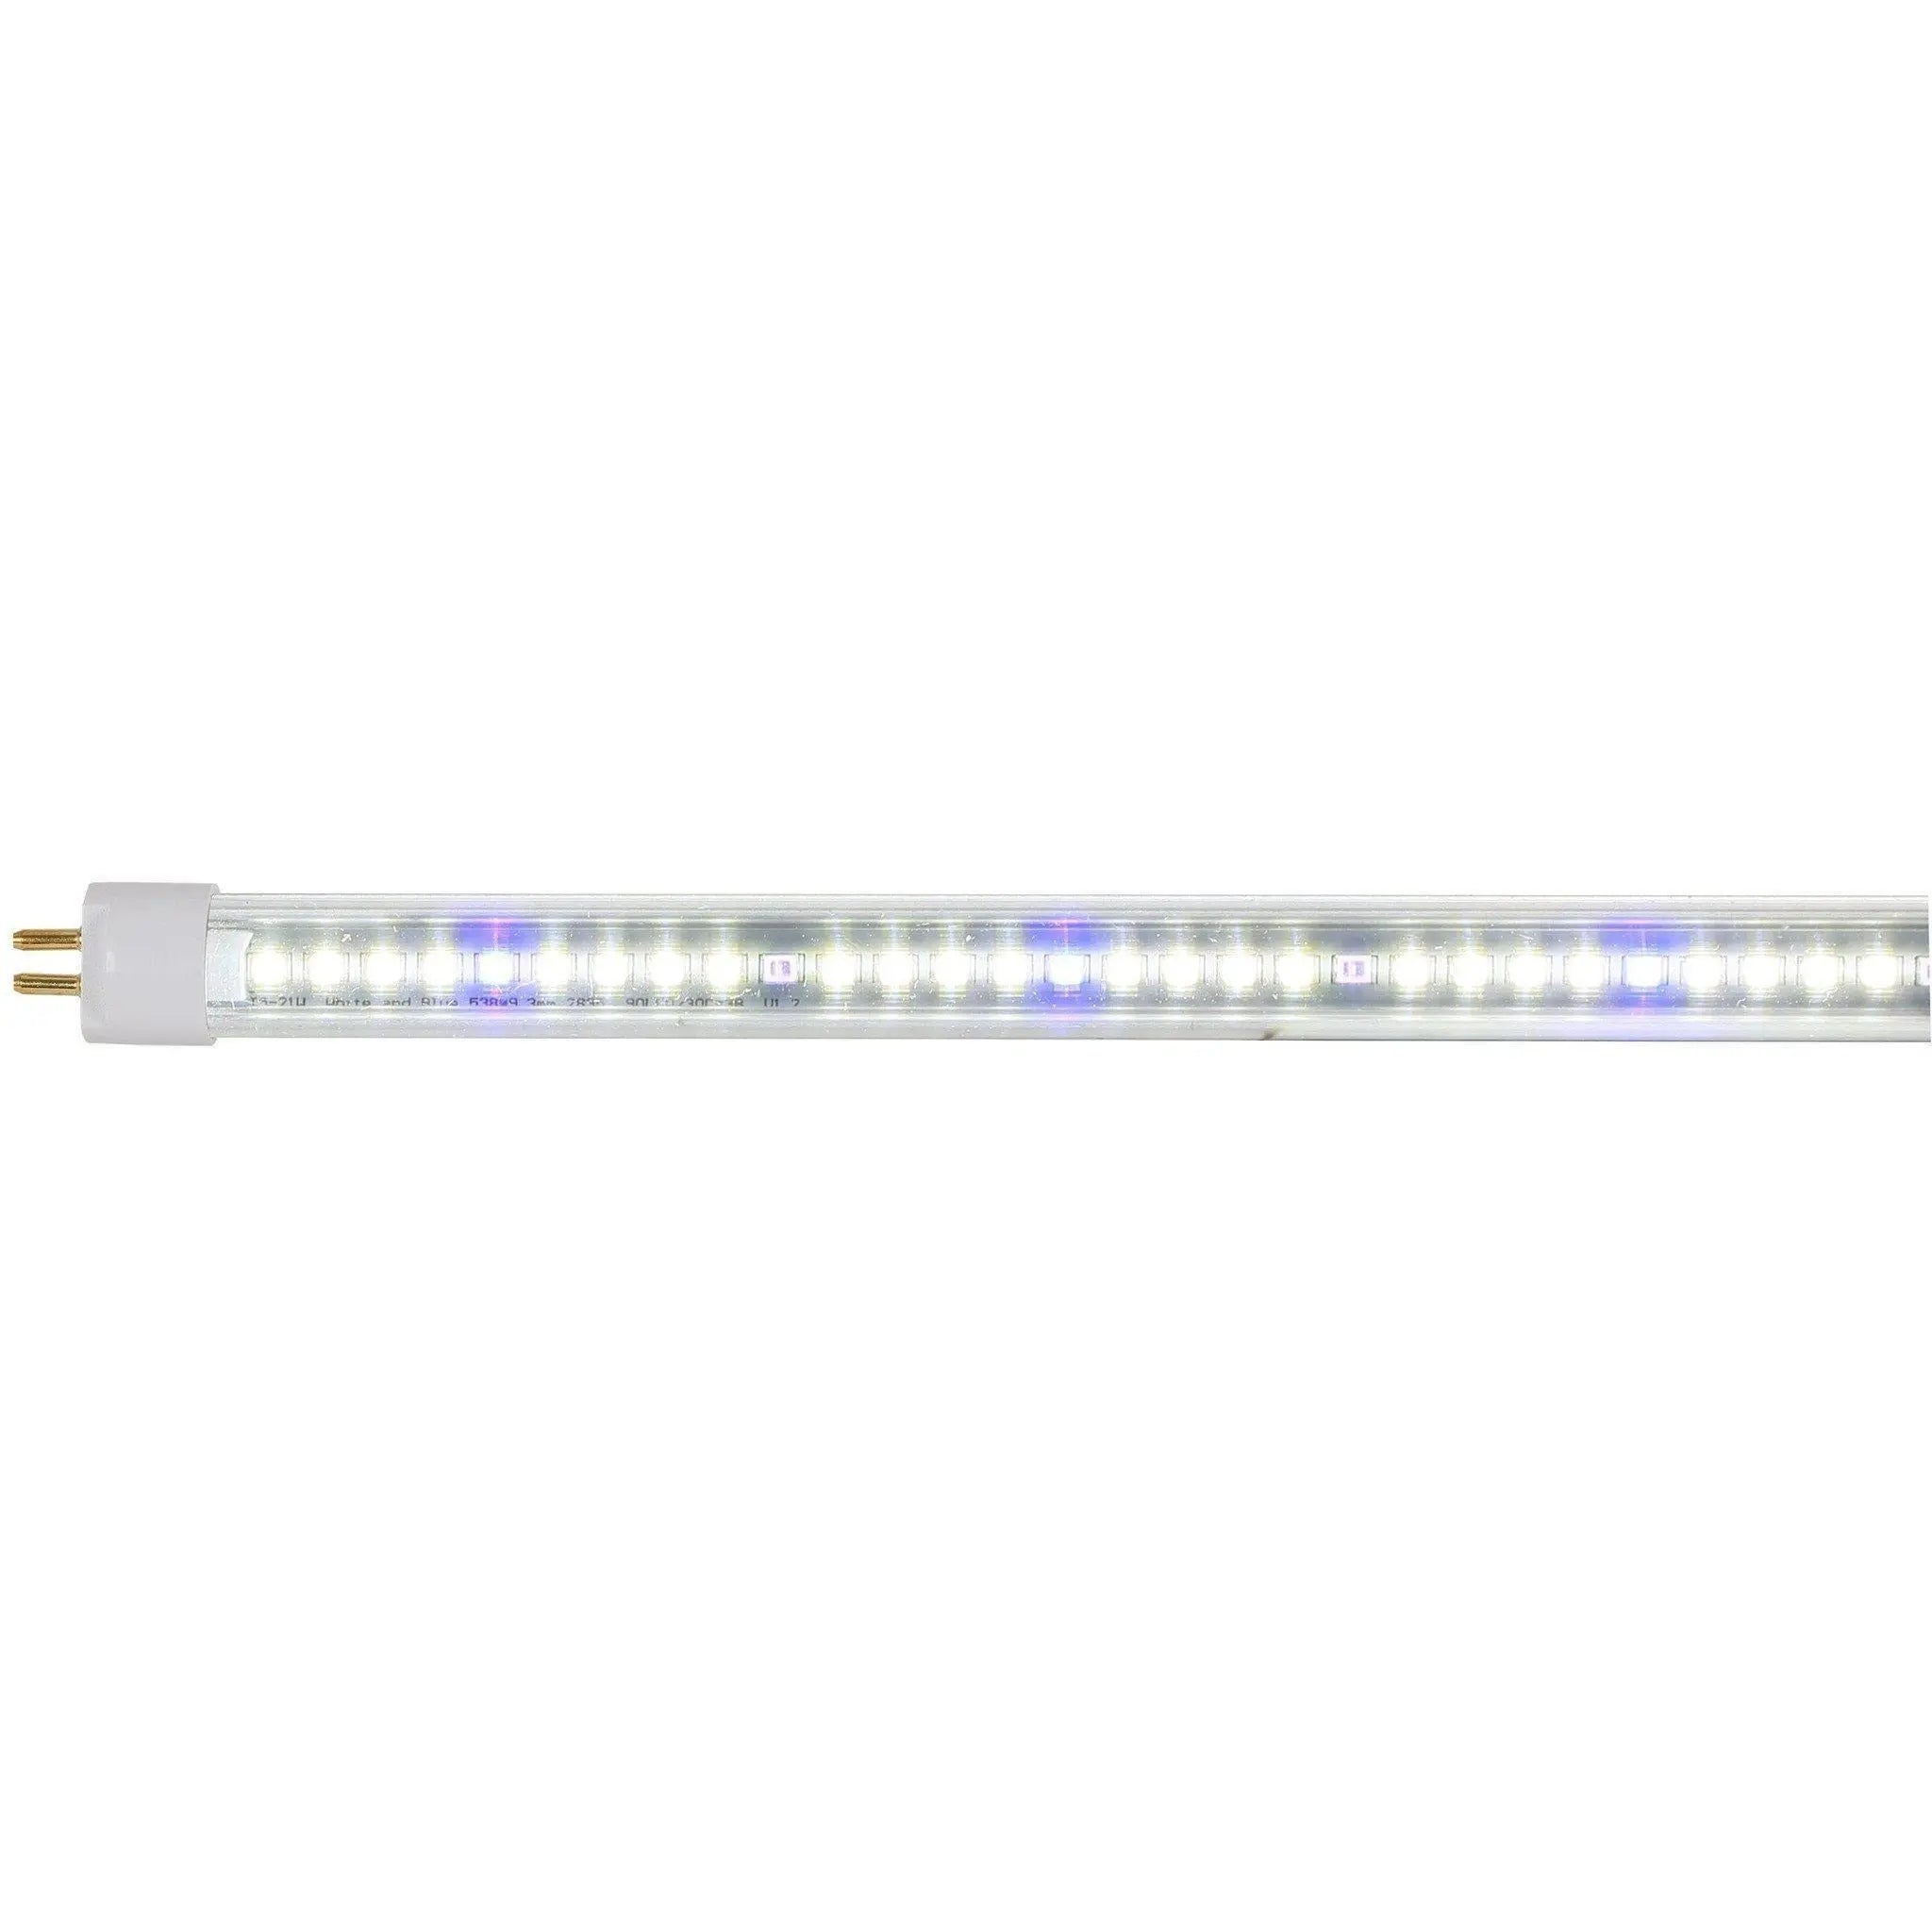 AgroLED iSunlight® 41 Watt T5 Vegetative + UV LED Grow Lamp, 4' AgroLED